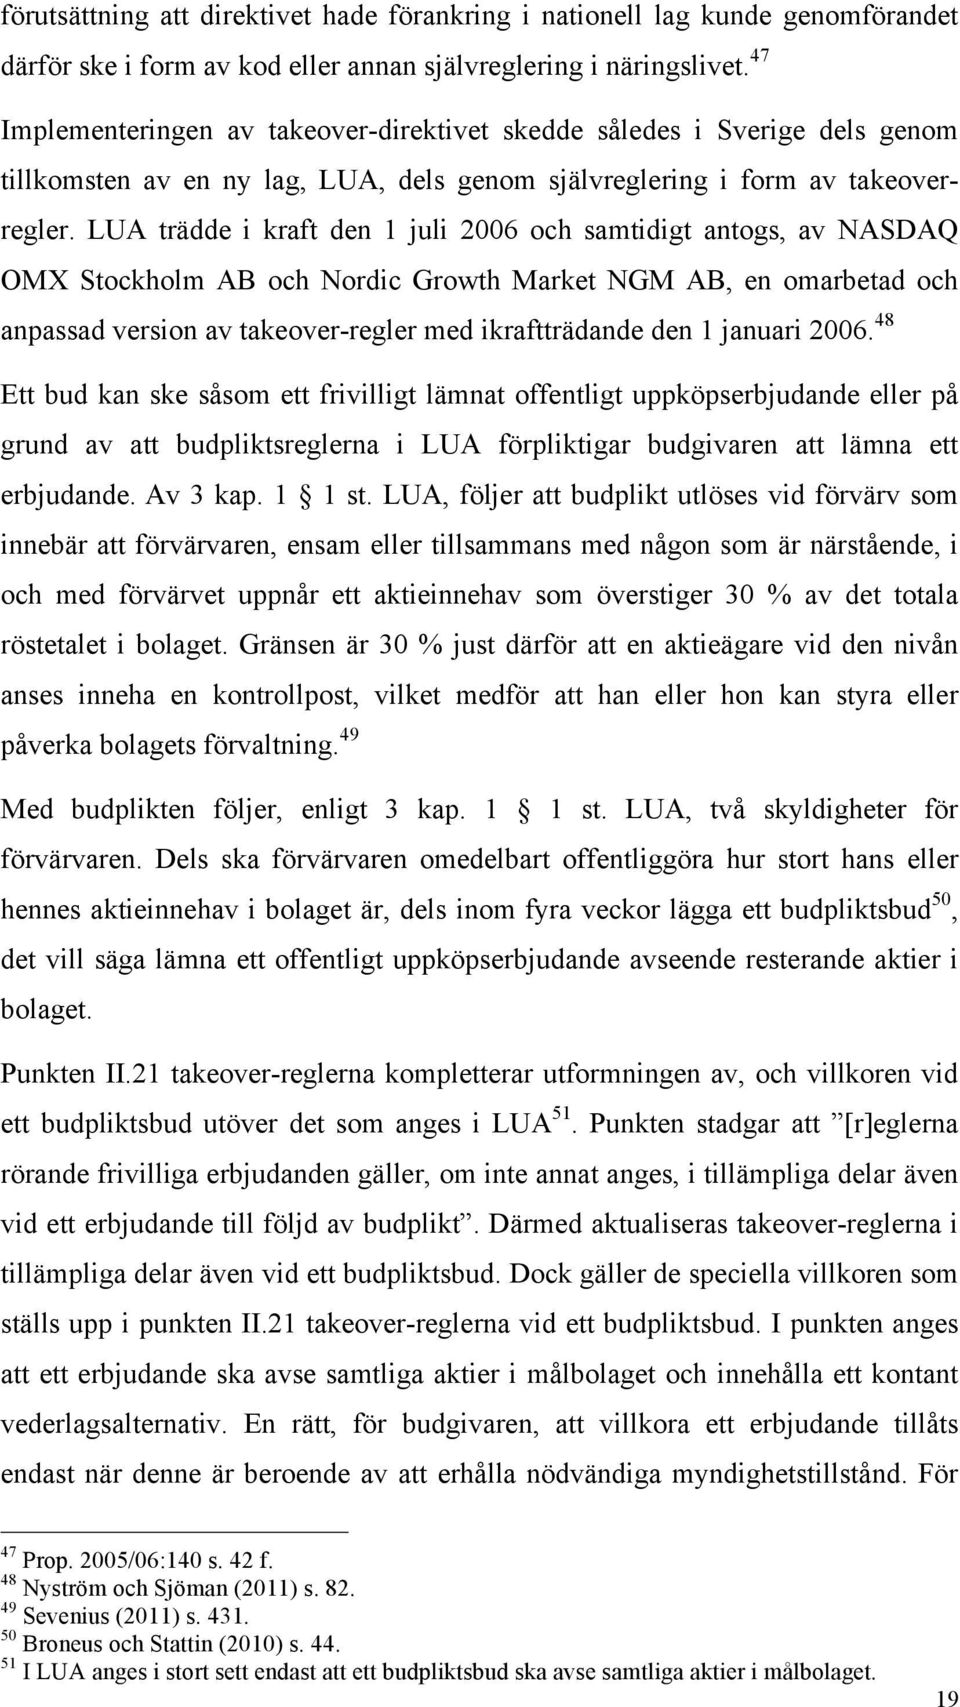 LUA trädde i kraft den 1 juli 2006 och samtidigt antogs, av NASDAQ OMX Stockholm AB och Nordic Growth Market NGM AB, en omarbetad och anpassad version av takeover-regler med ikraftträdande den 1